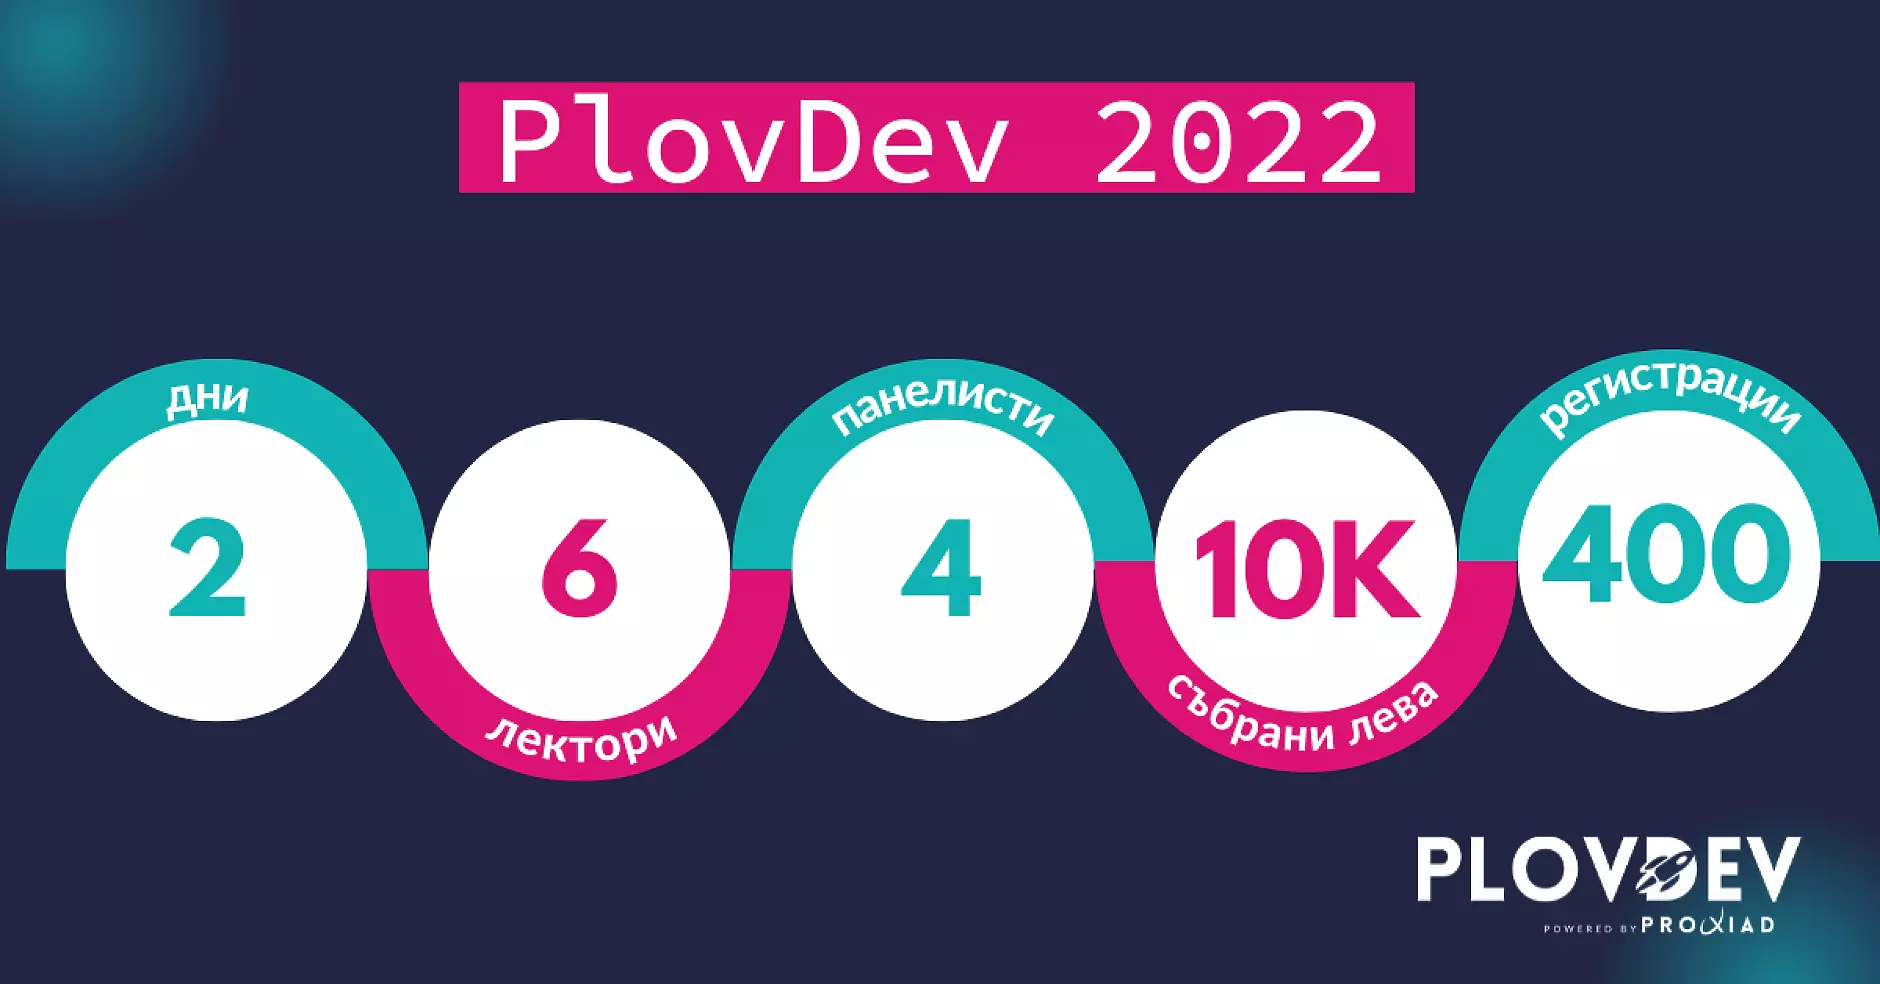 PlovDev събра над 10 000 лв за благотворителност